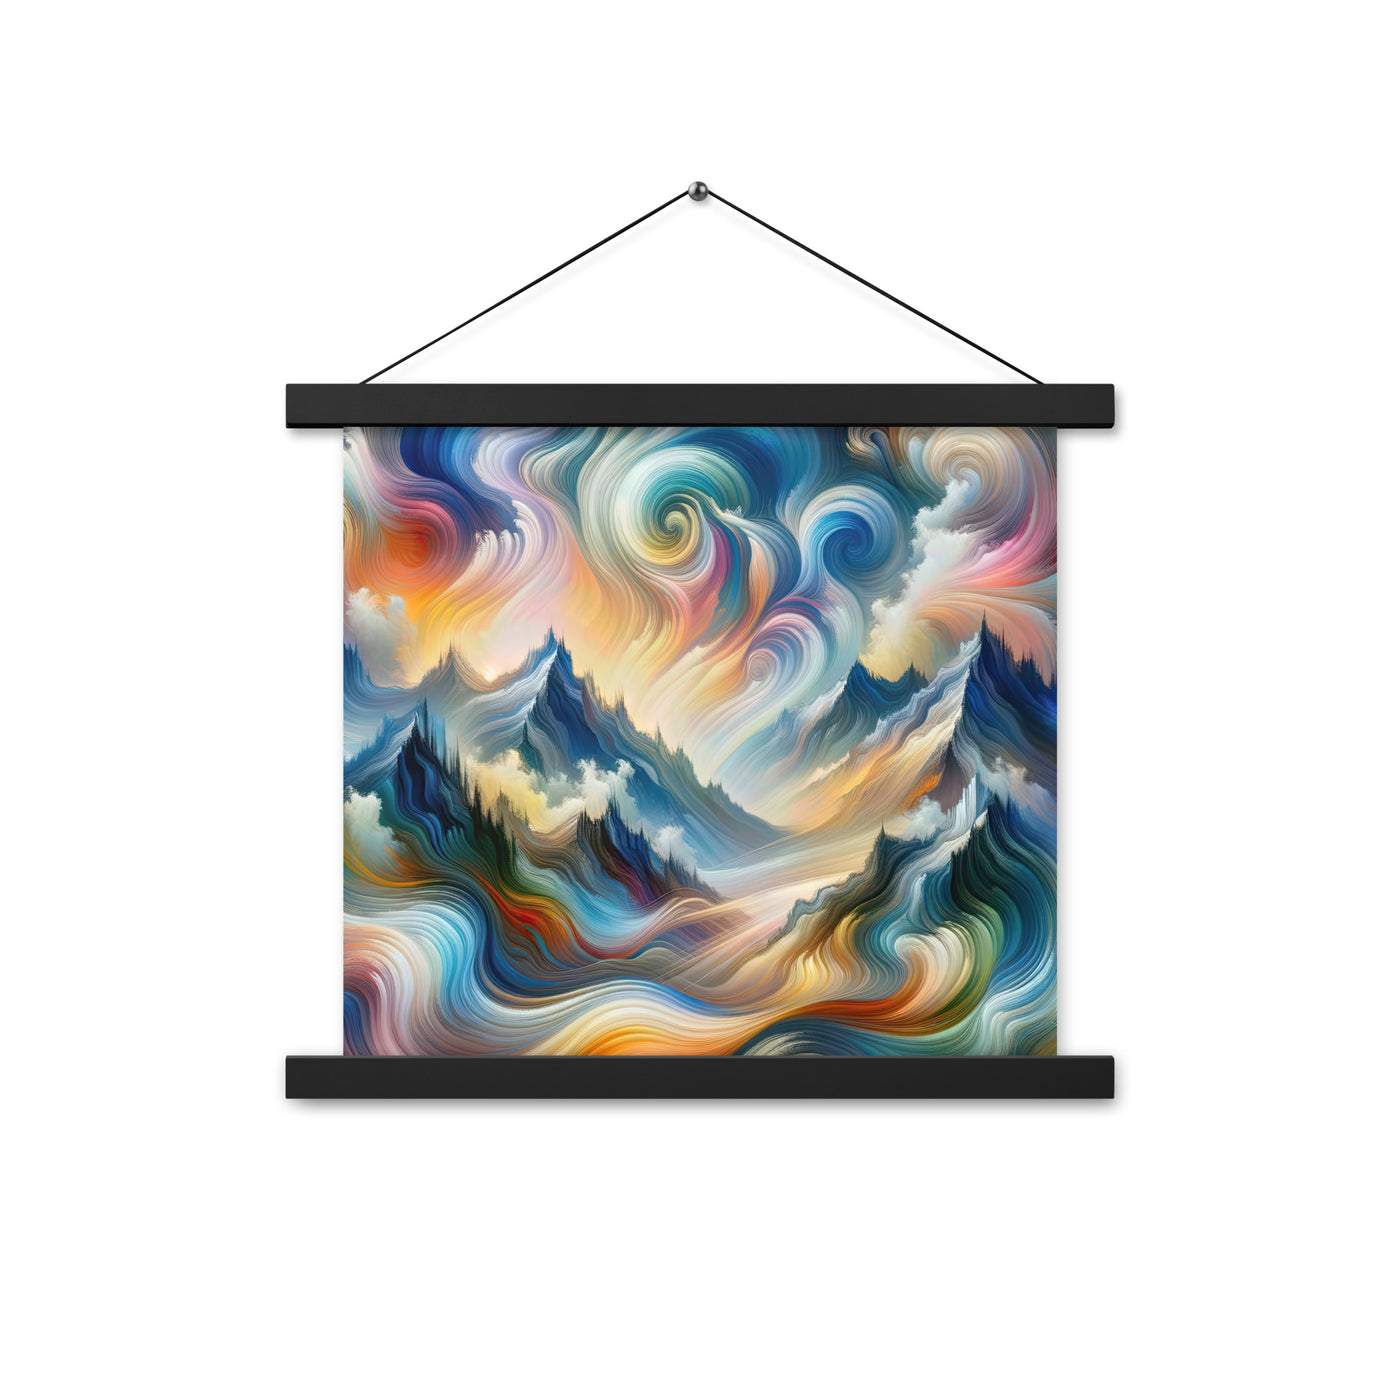 Ätherische schöne Alpen in lebendigen Farbwirbeln - Abstrakte Berge - Premium Poster mit Aufhängung berge xxx yyy zzz 35.6 x 35.6 cm